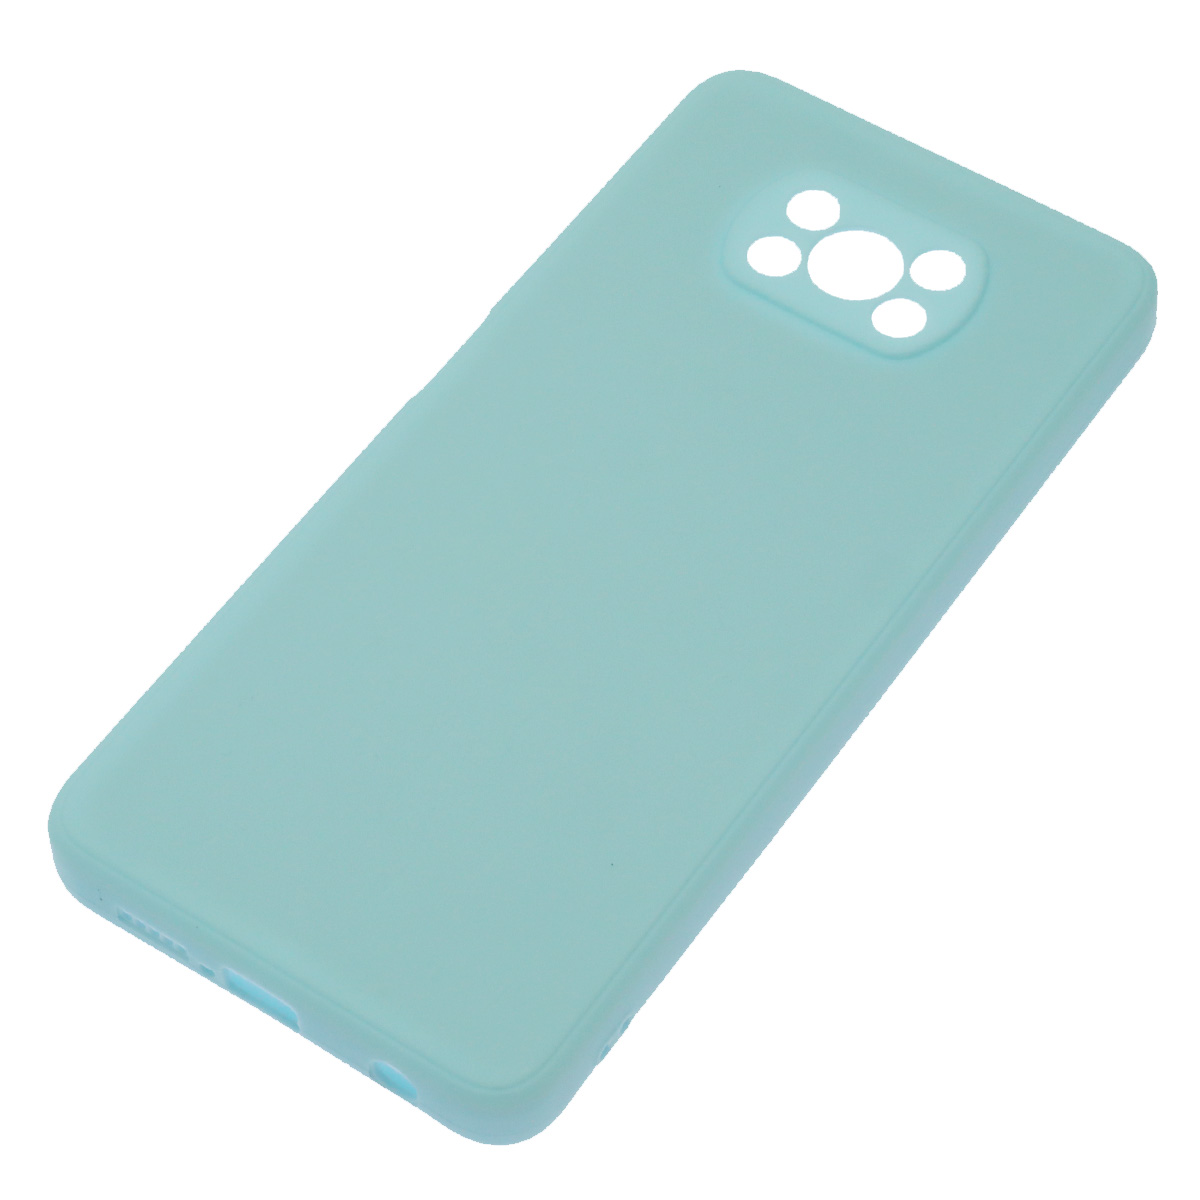 Чехол накладка для XIAOMI POCO X3, X3 Pro, силикон, бархат, цвет светло голубой